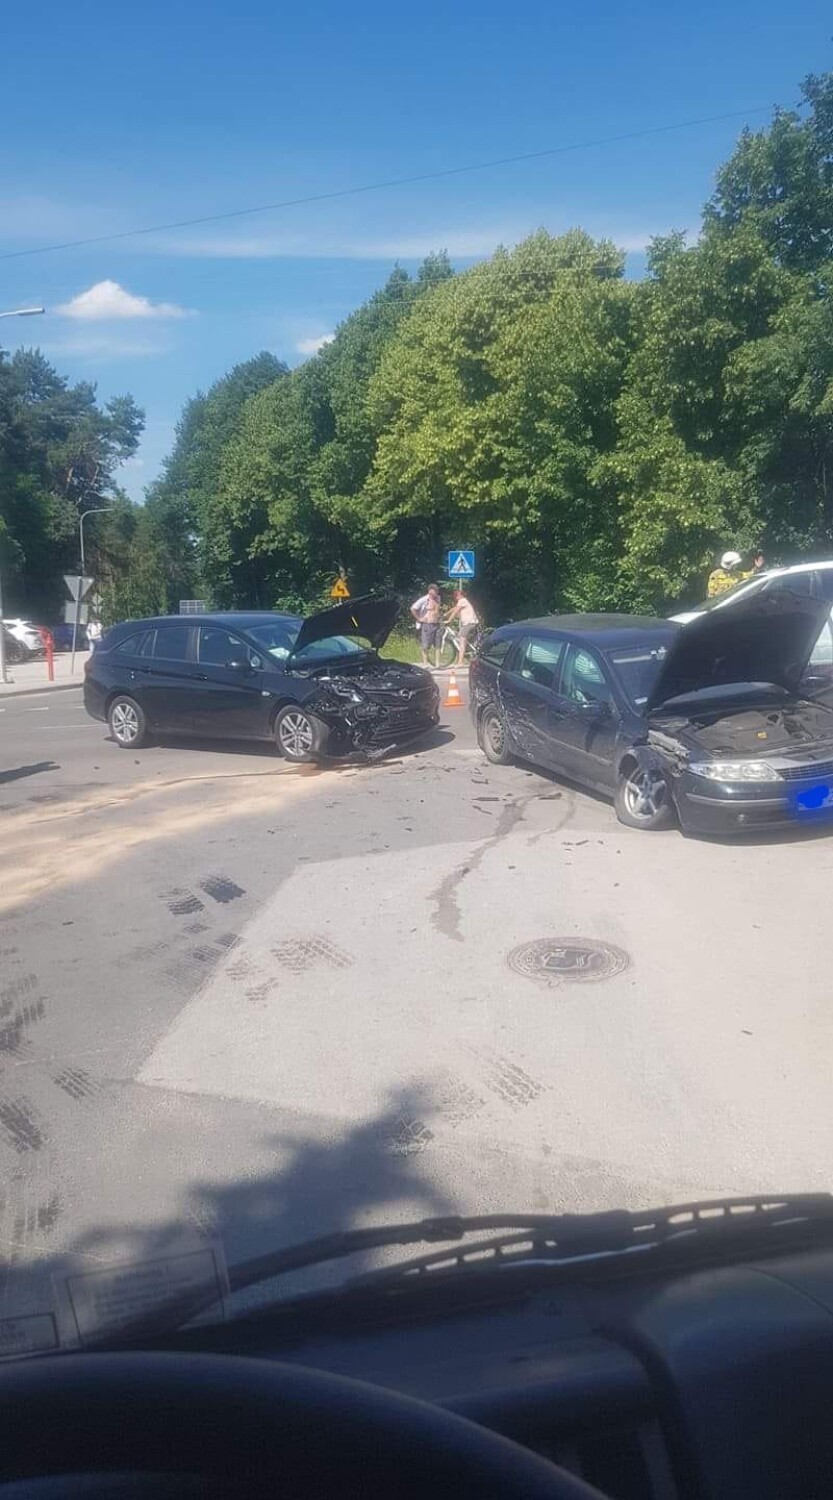 Wypadek w Smardzewicach. Zderzyły się dwa samochody osobowe ZDJĘCIA